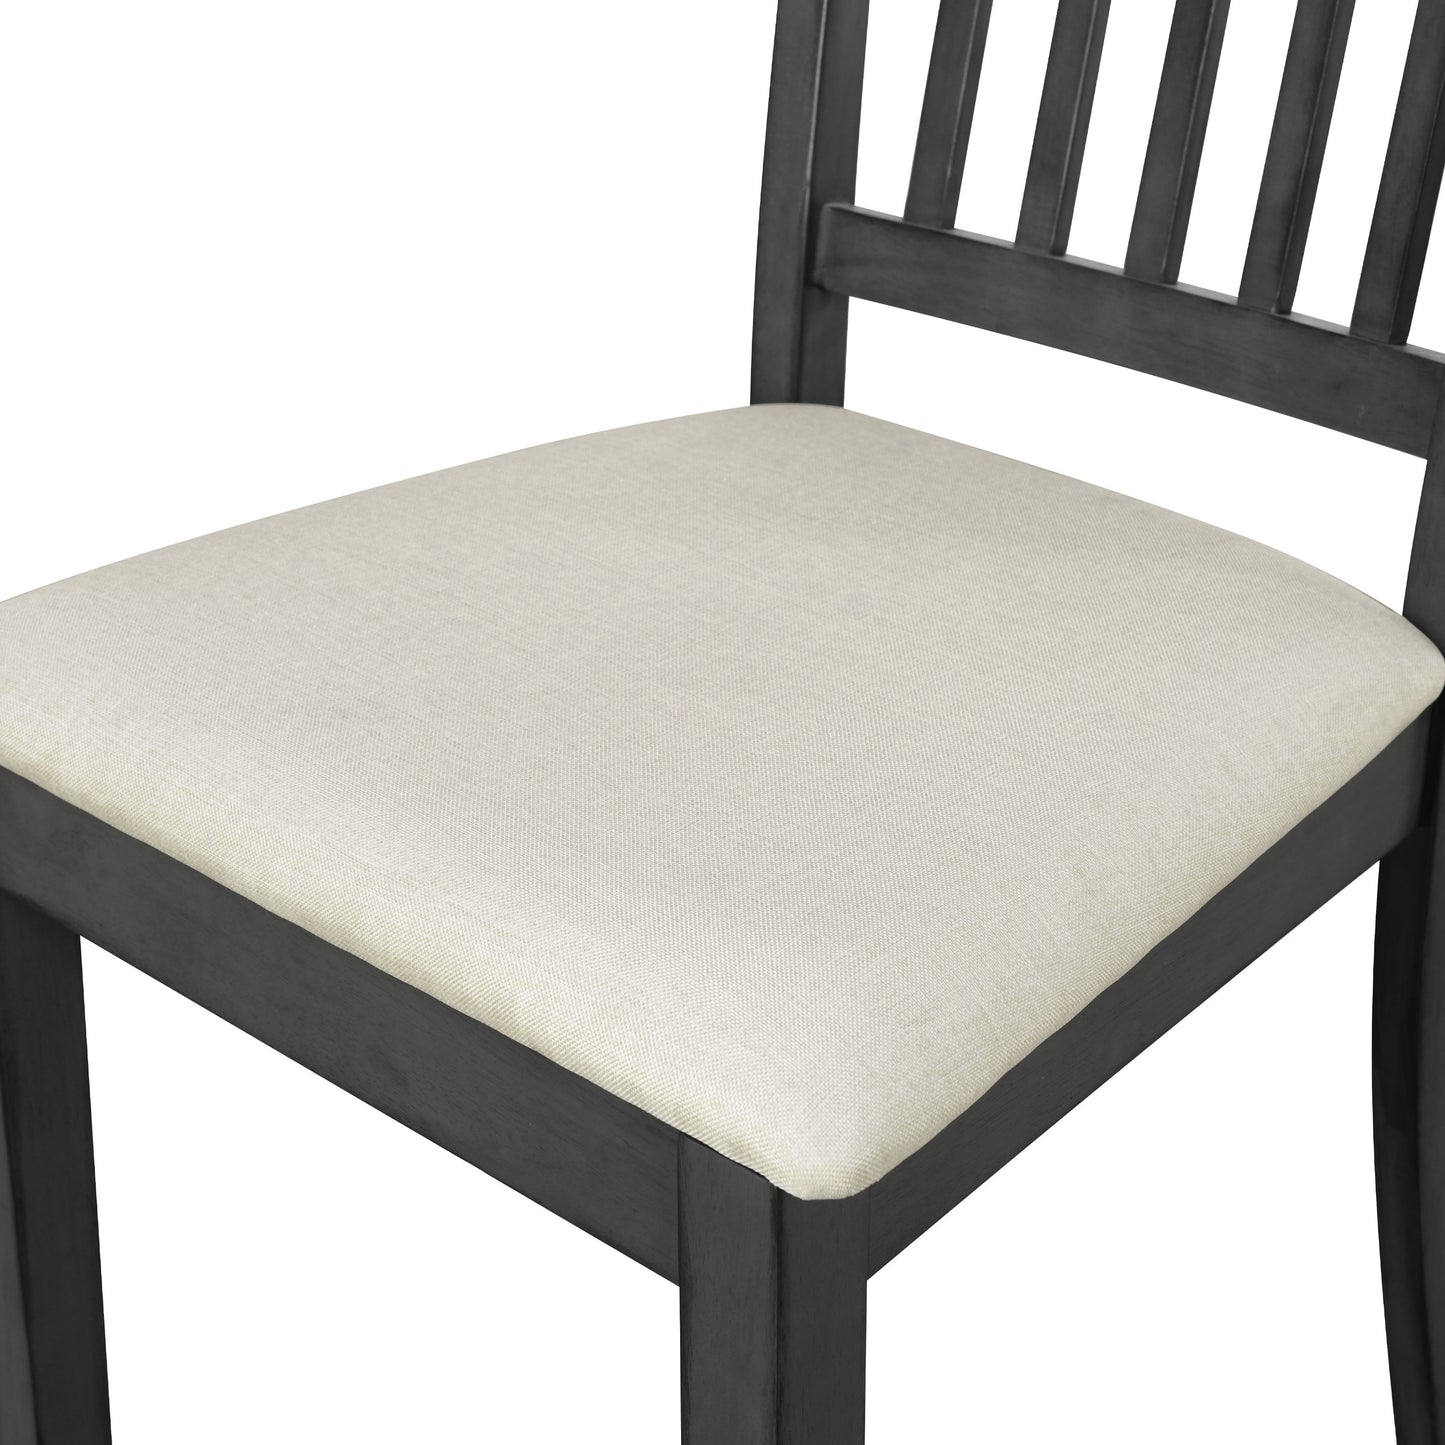 6-teiliges rustikales Esszimmerset, rechteckiger Tisch mit X-Gestell und 4 gepolsterte Stühle und Bank (Grau)